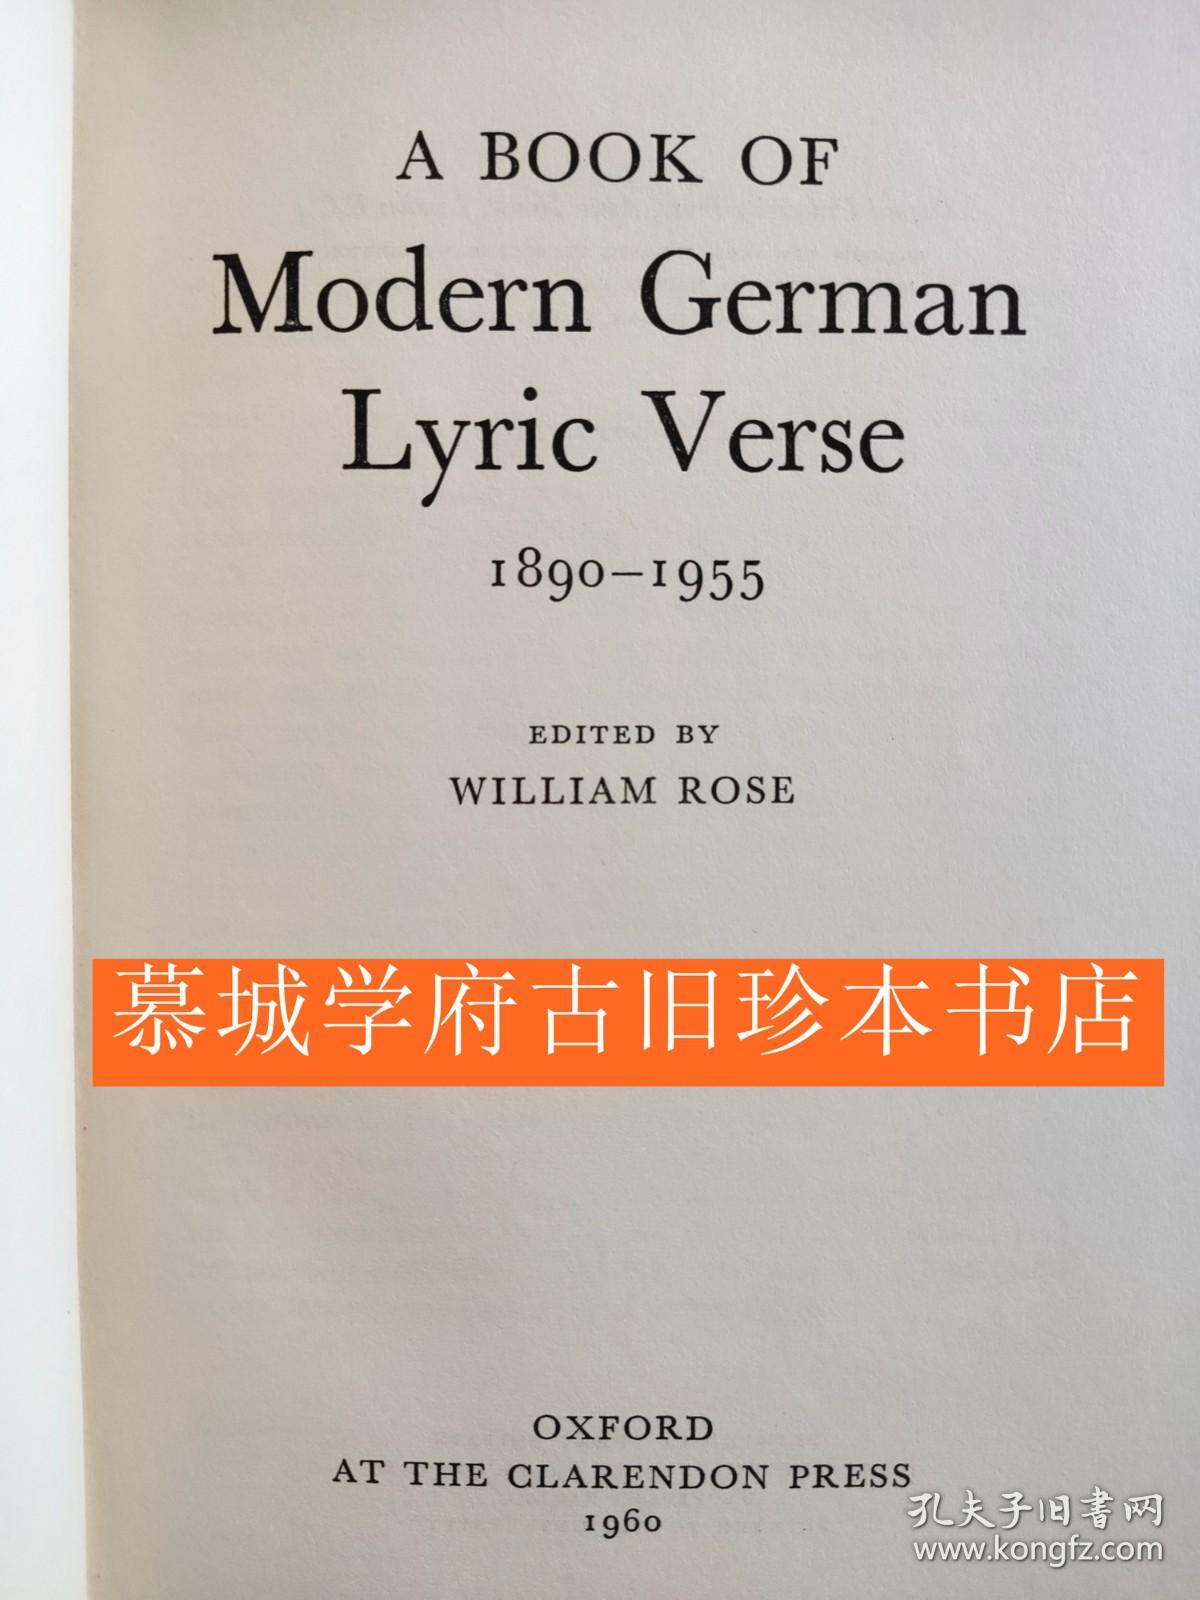 【包邮】《牛津现代德国诗选》A BOOK OF MODERN GERMAN LYRIC VERSE 1890-1955 EDITED BY WILLIAM ROSE